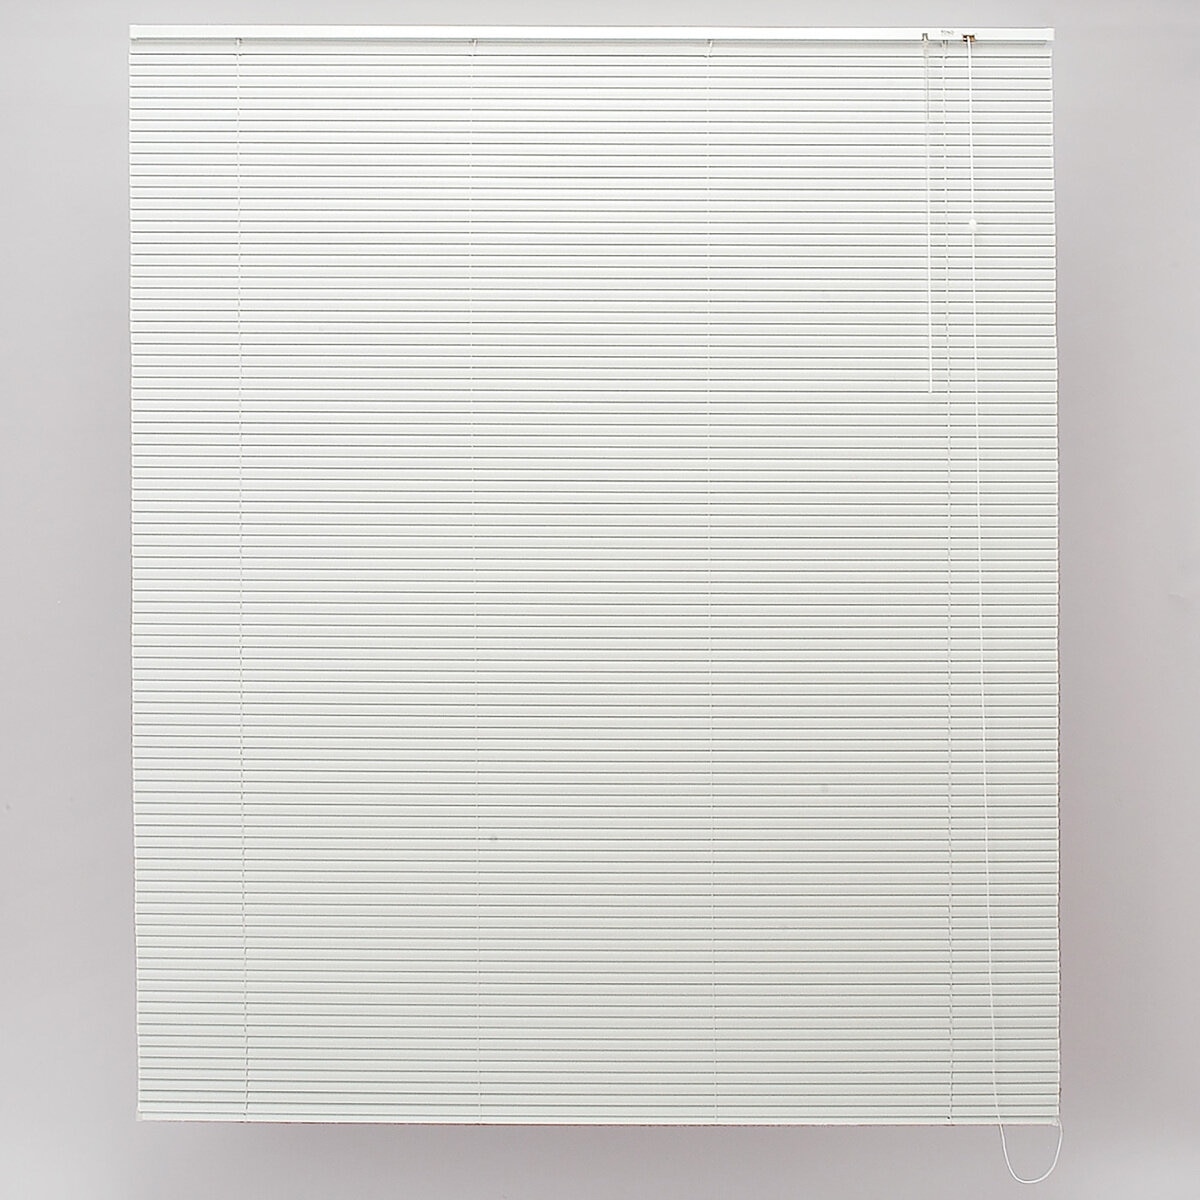 トーソー スポーラR IB アルミブラインド 128 cm x 138 cm ホワイト